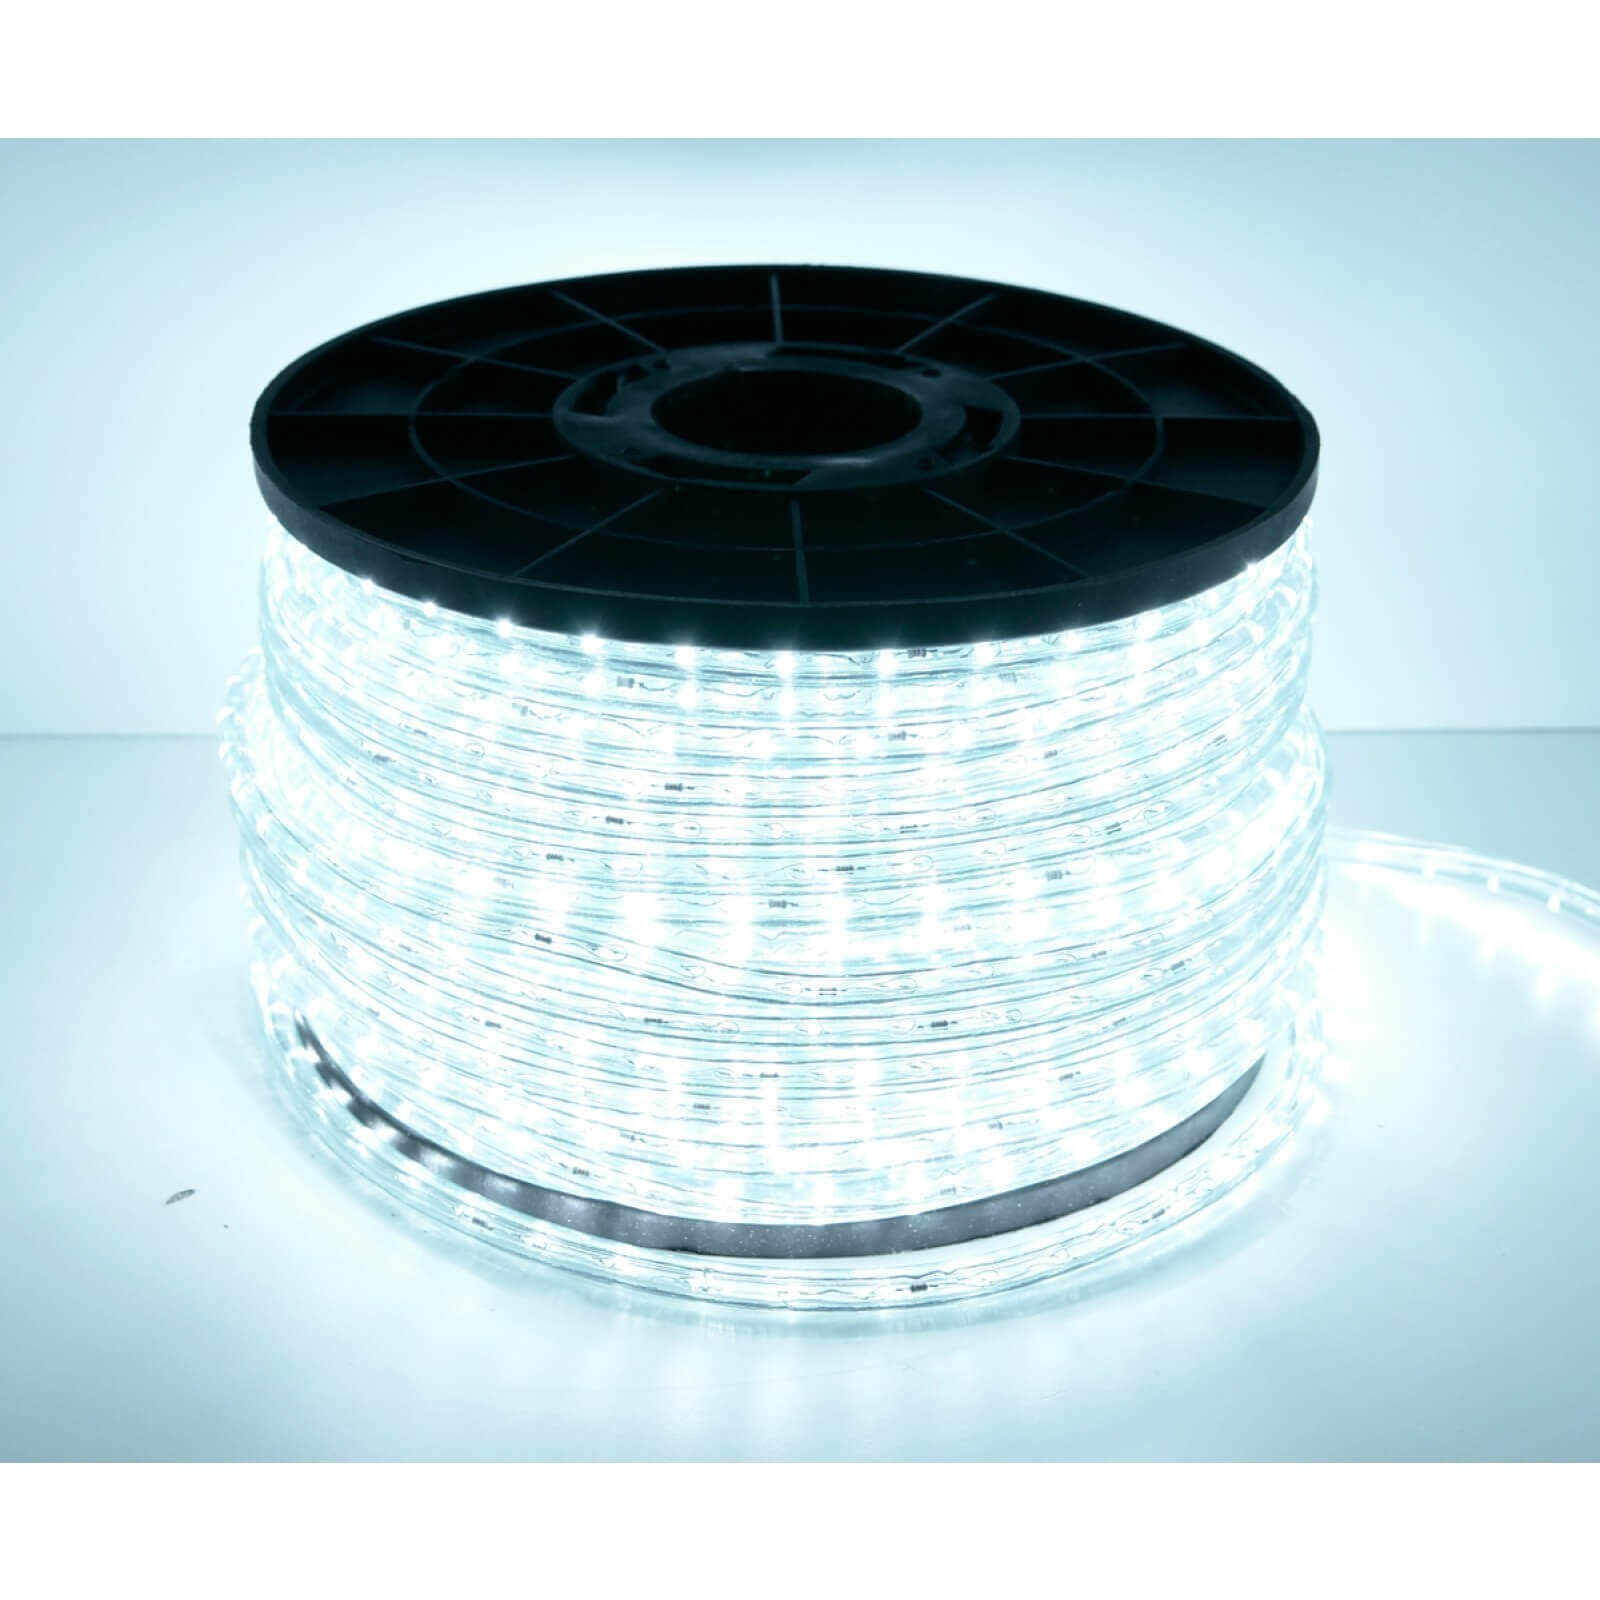 Cordon lumineux LED Multicolore - 50m - Extérieur - BE1ST PRO